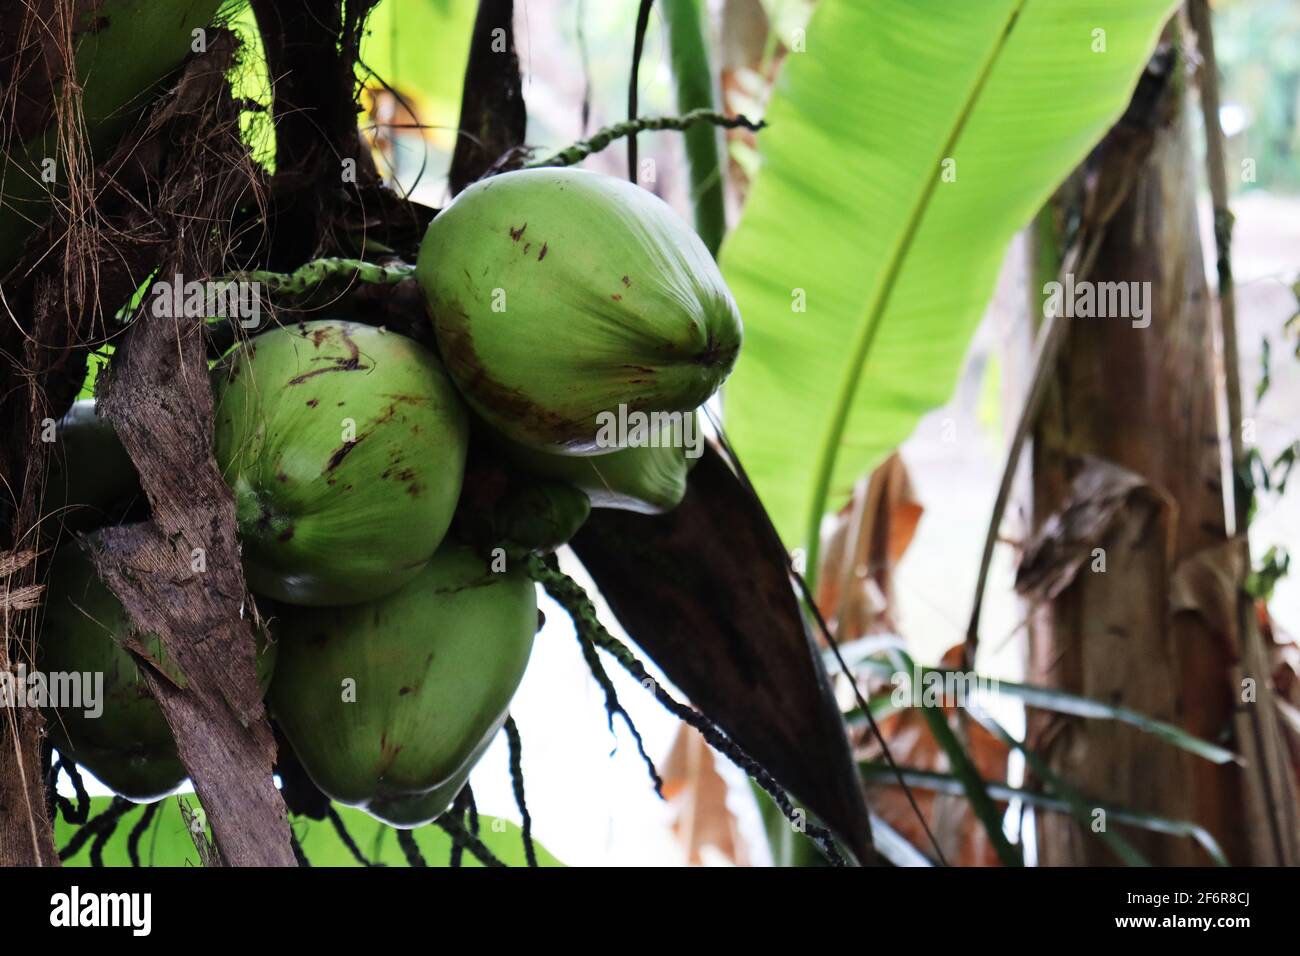 La noix de coco est le fruit de la noix de coco (Cocos nucifera). Il est utilisé pour son eau, son lait, son huile et sa viande savoureuse. Banque D'Images